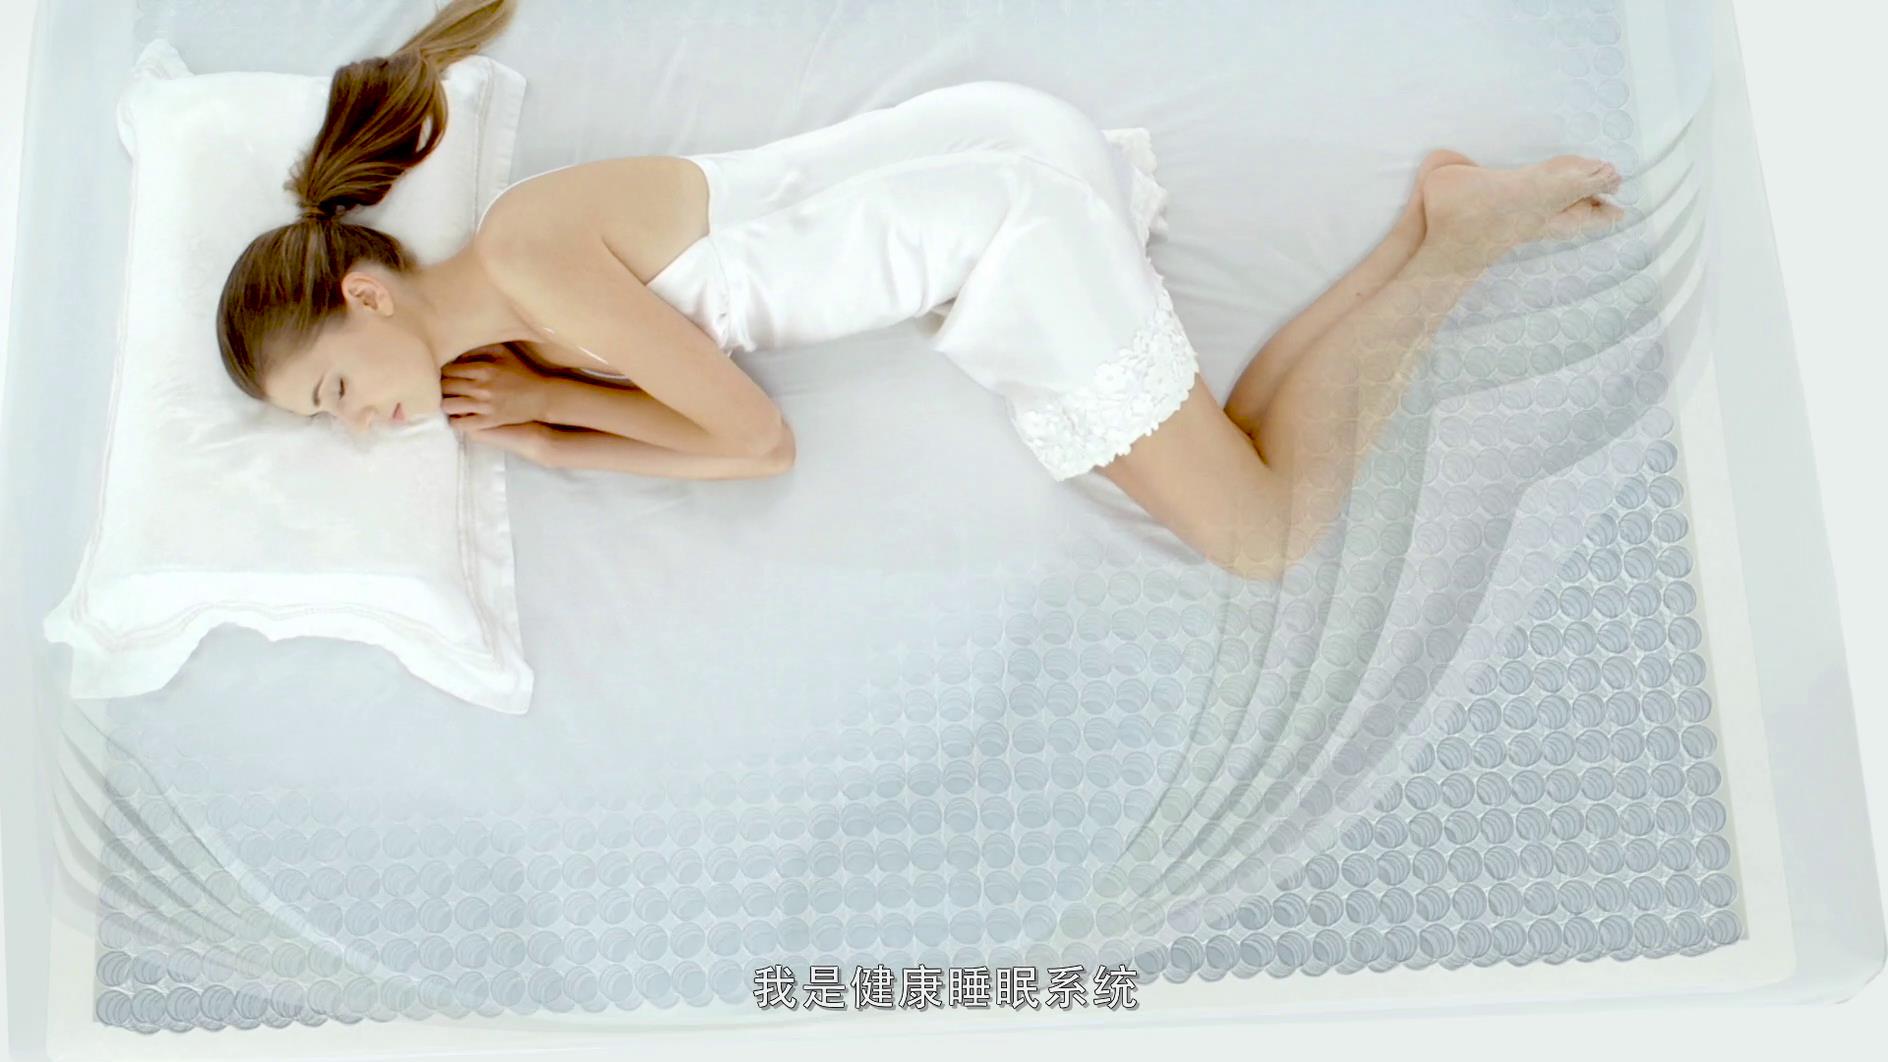 床垫哪个品牌好可以考虑慕思_中国十大床垫品牌慕思居高首位_十大床垫品牌排行榜慕思位列前三